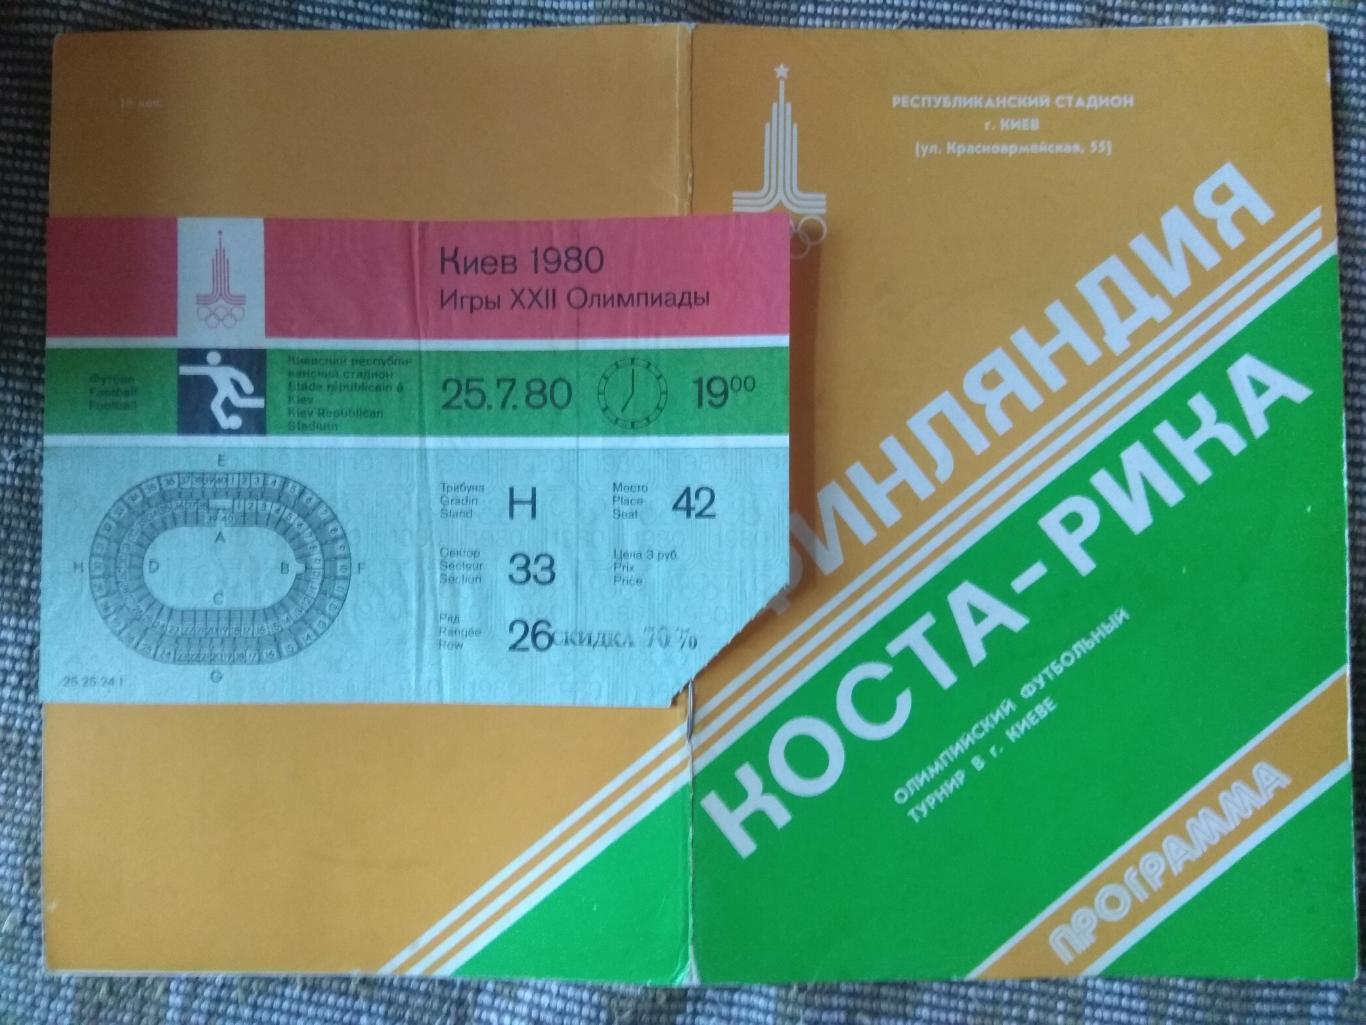 Билет и программа Финляндия - Коста-Рика Олимпиада Киев 1980 г